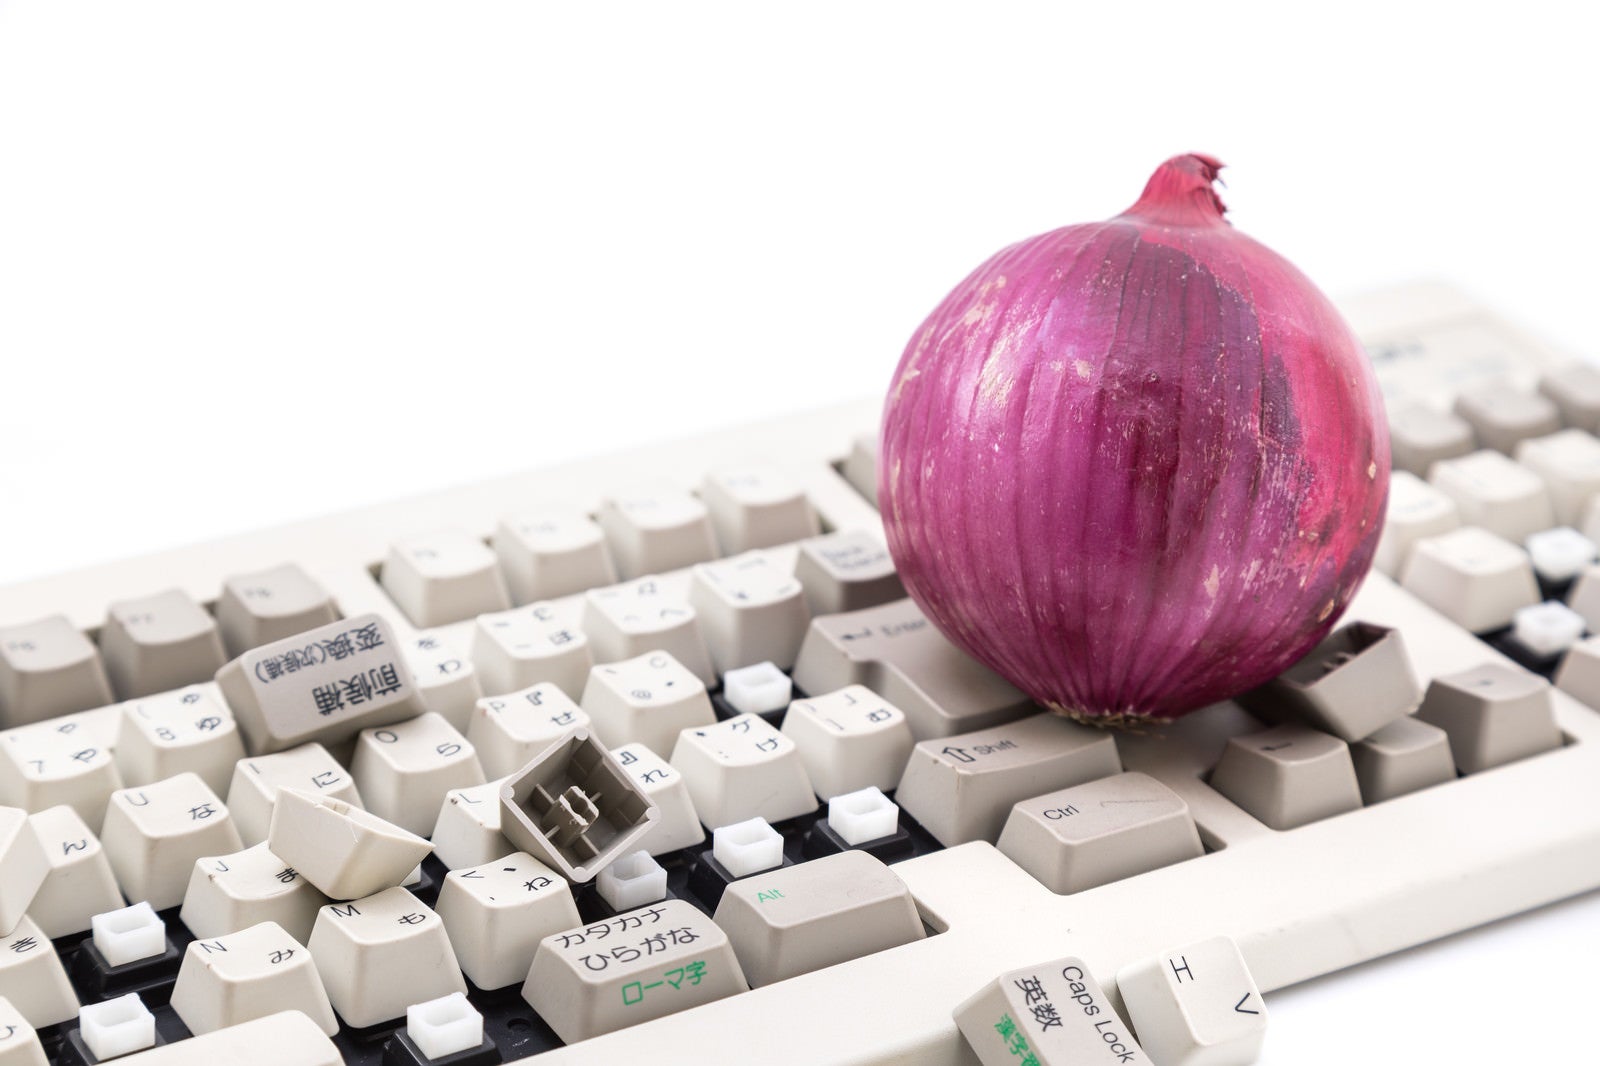 「紫玉葱と操作出来なくなったキーボード」の写真